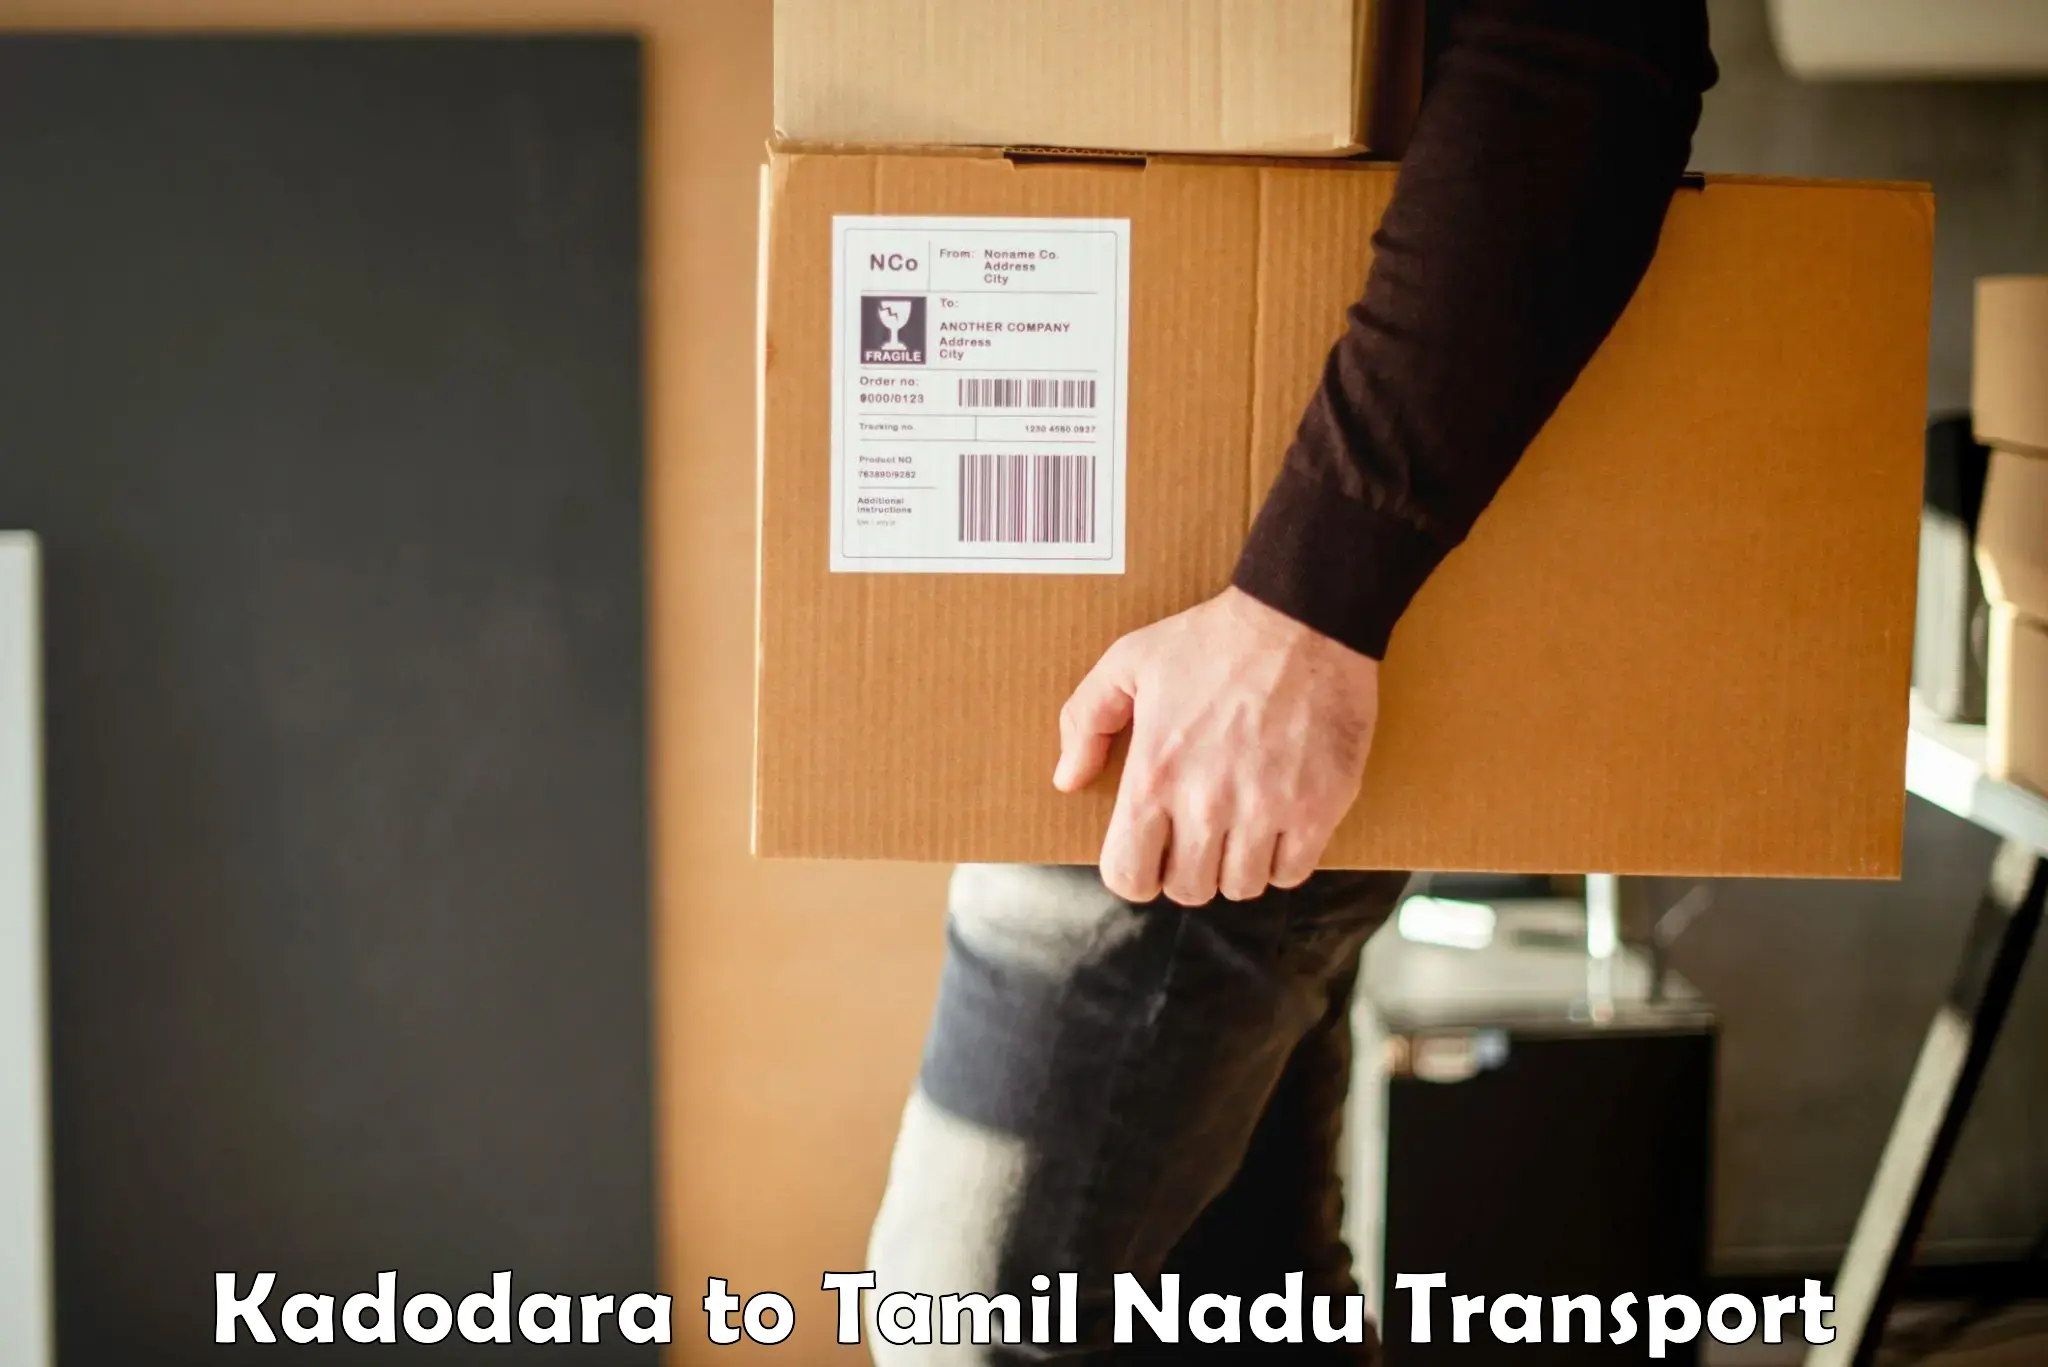 India truck logistics services Kadodara to Chennai